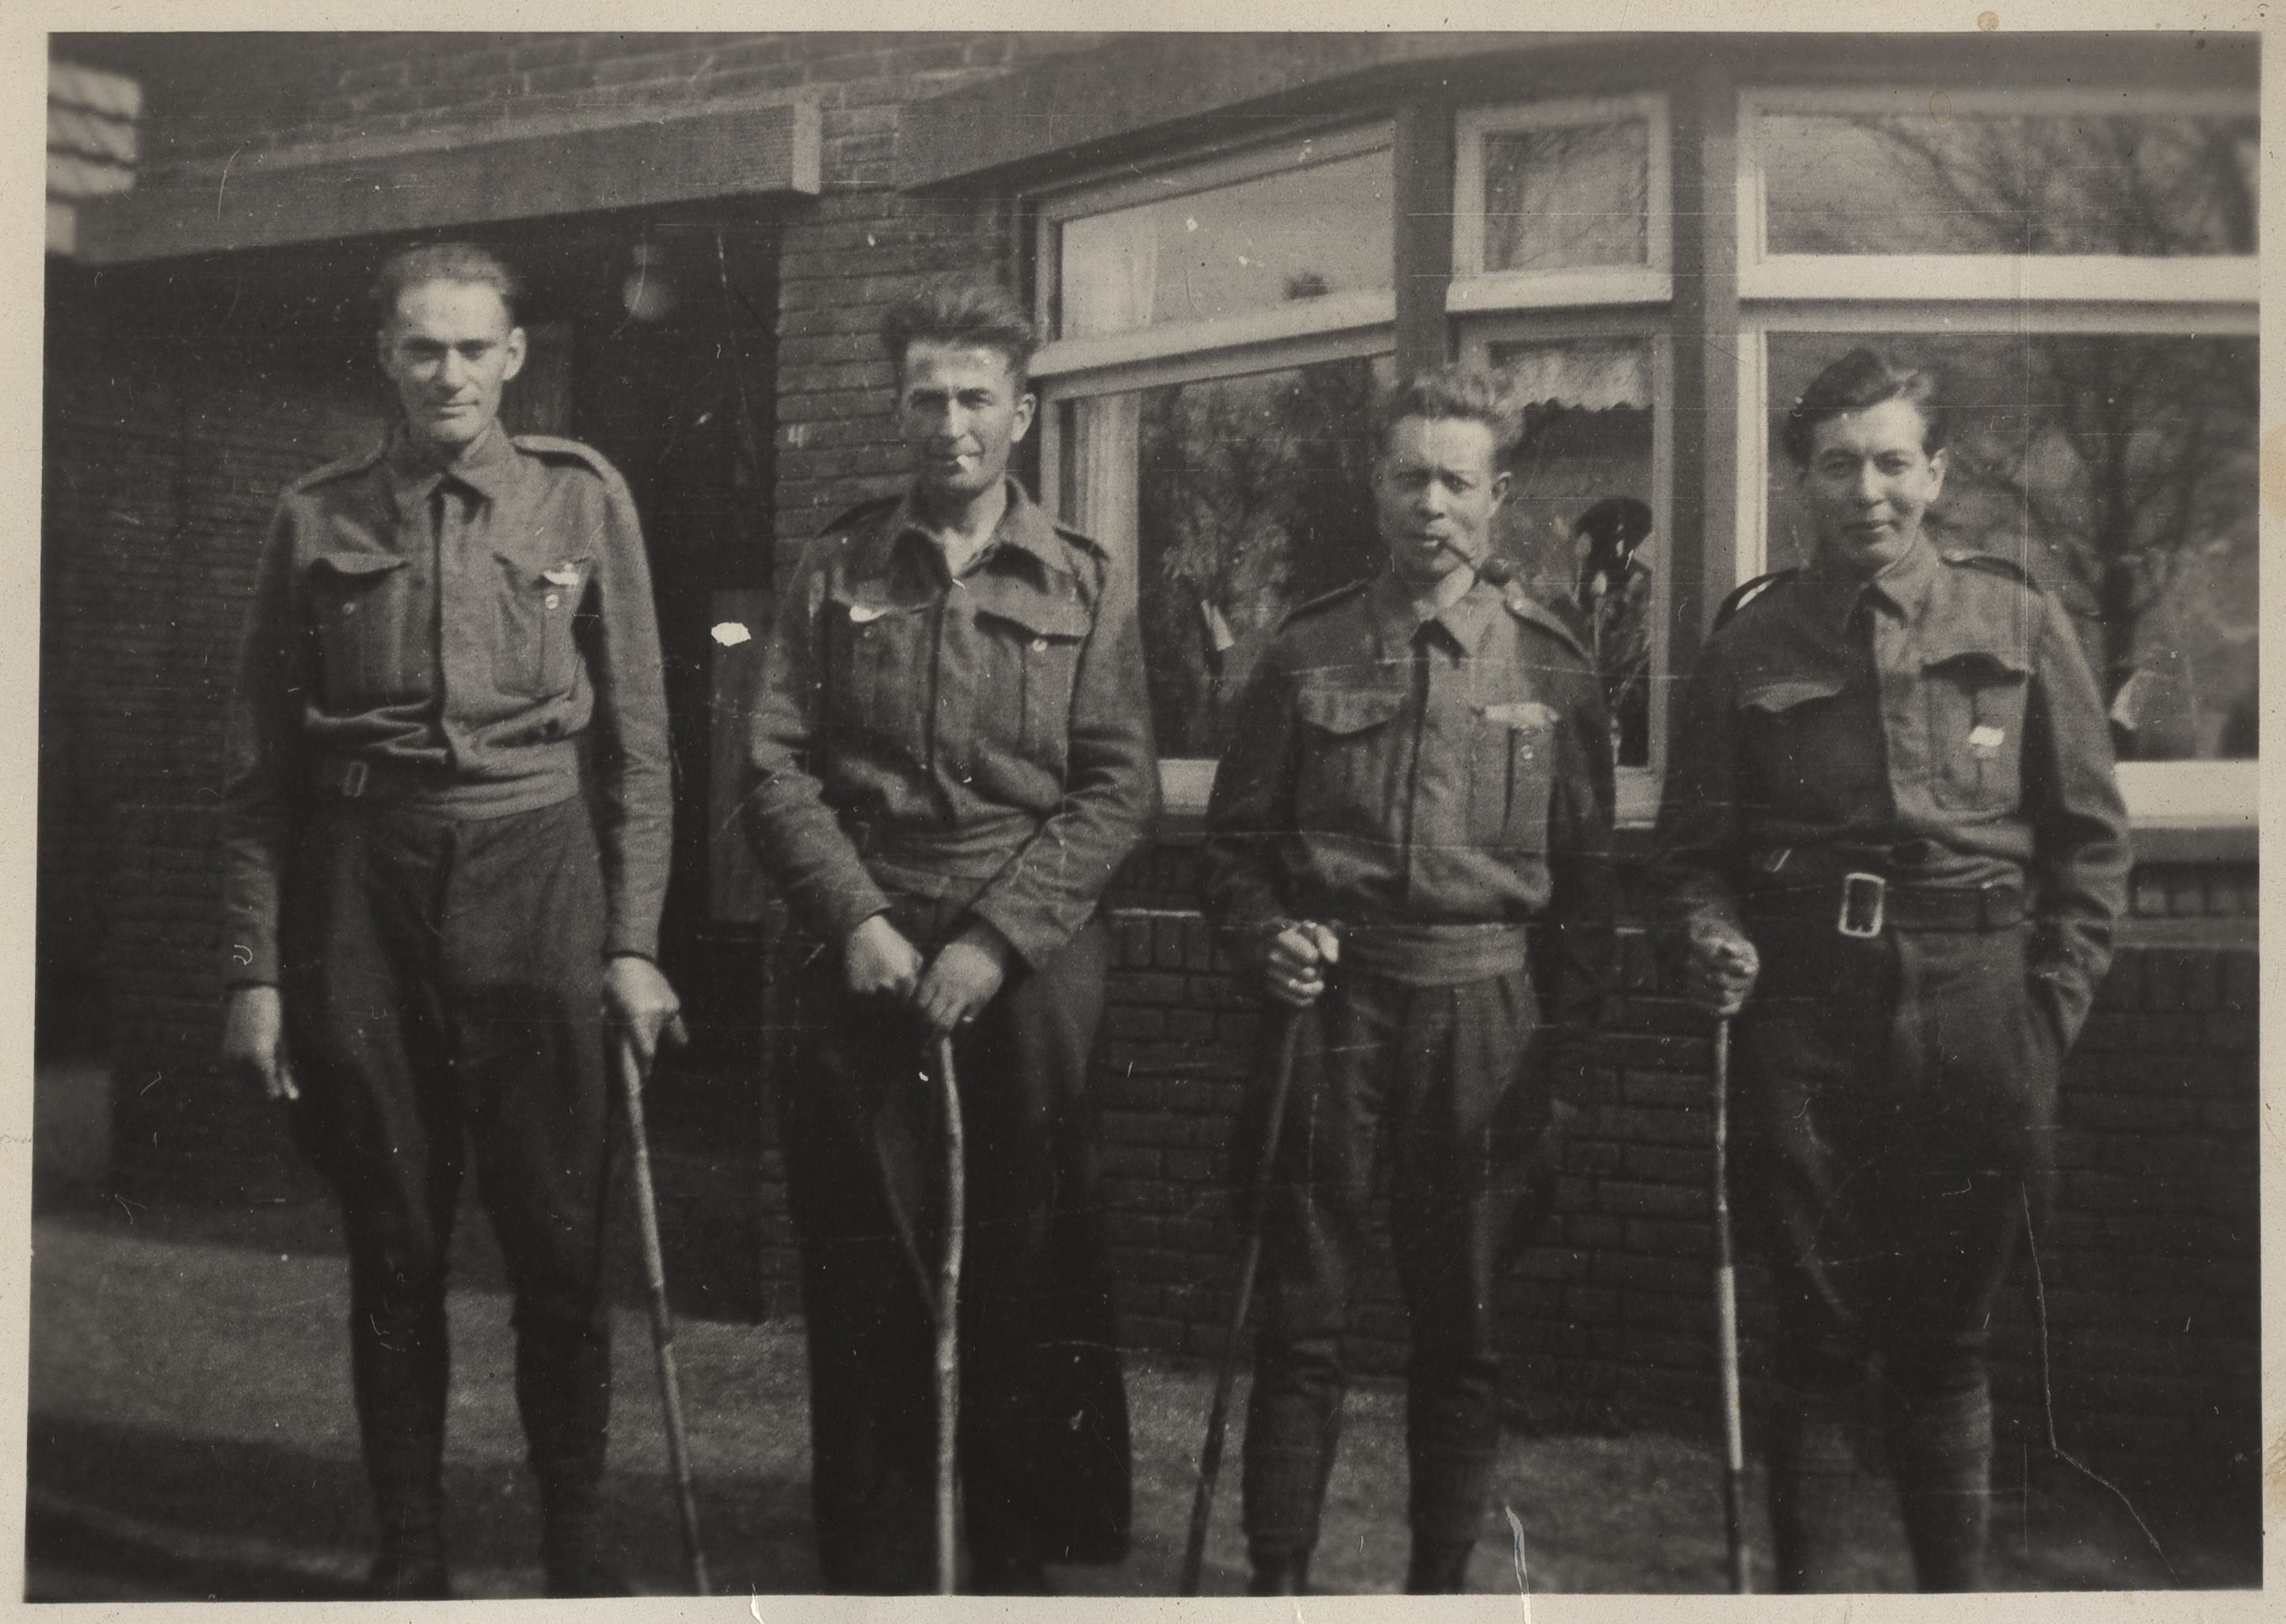 Stationsstraat 4 in Musselkanaal: Johannes Tillema (l.) en drie kameraden te voet teruggekeerd uit een kamp in de buurt van Hannover, Duitsland.